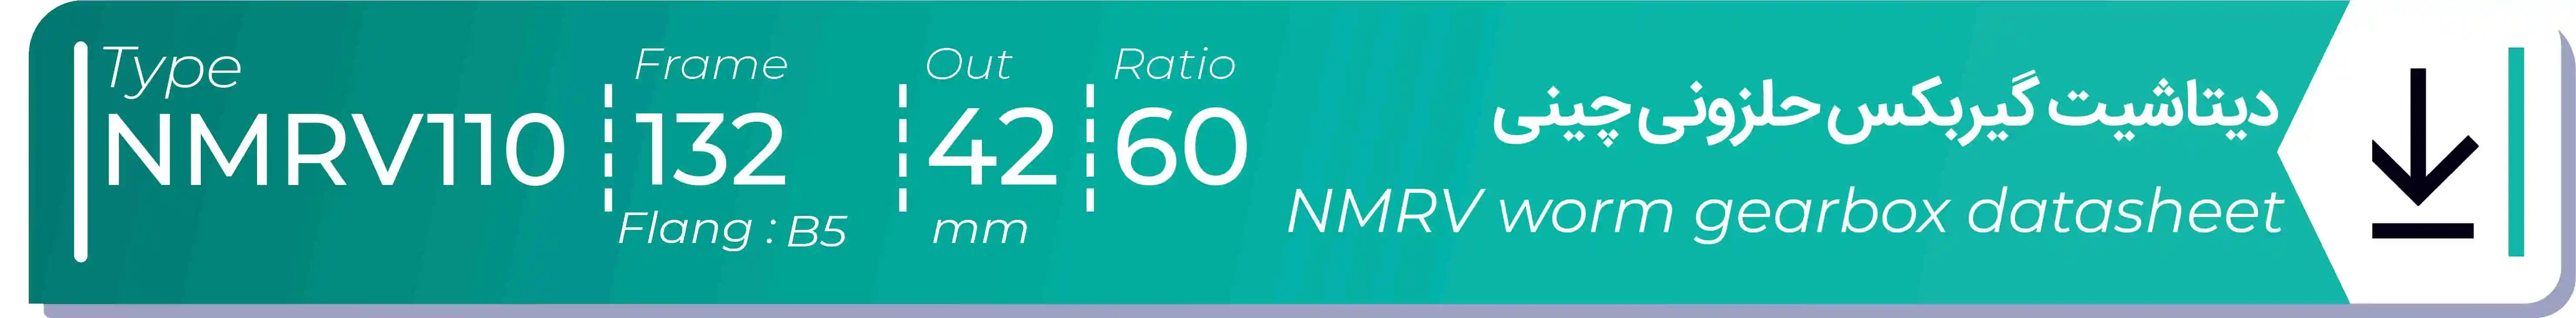  دیتاشیت و مشخصات فنی گیربکس حلزونی چینی   NMRV110  -  با خروجی 42- میلی متر و نسبت60 و فریم 132